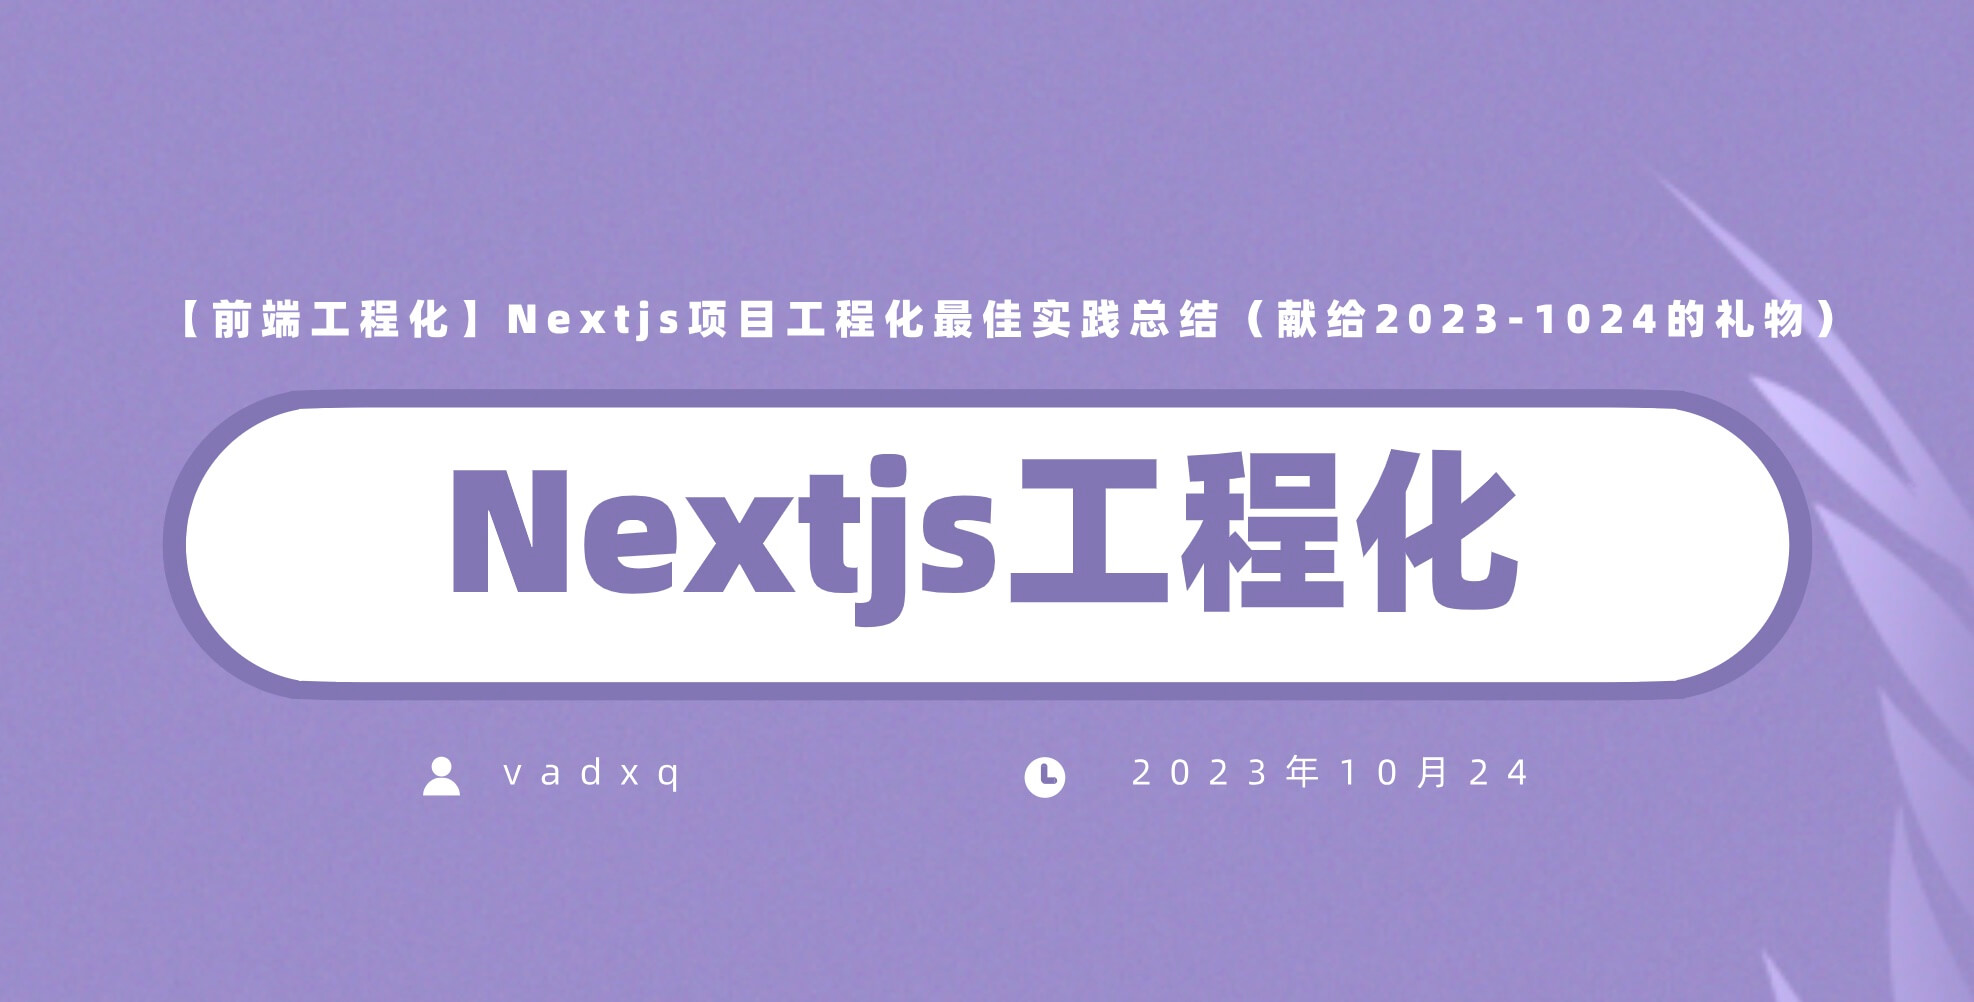 【前端工程化】Nextjs项目工程化最佳实践总结（献给2023-1024的礼物）